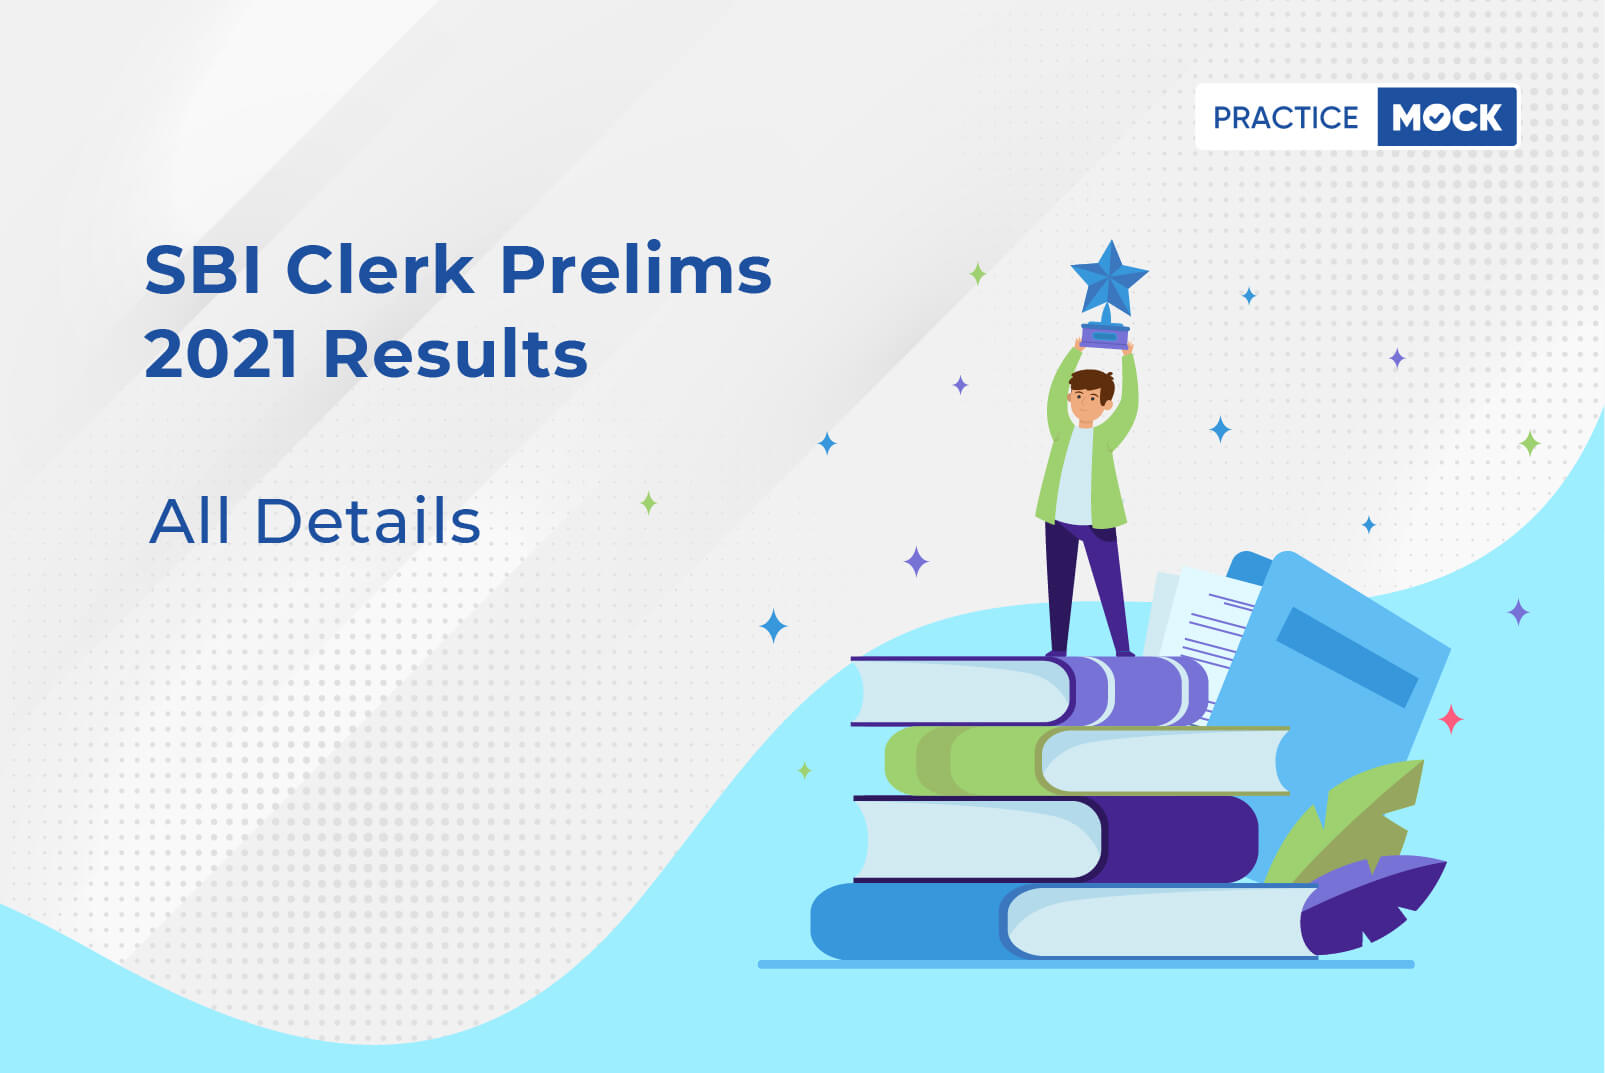 SBI Clerk Prelims Results 2021